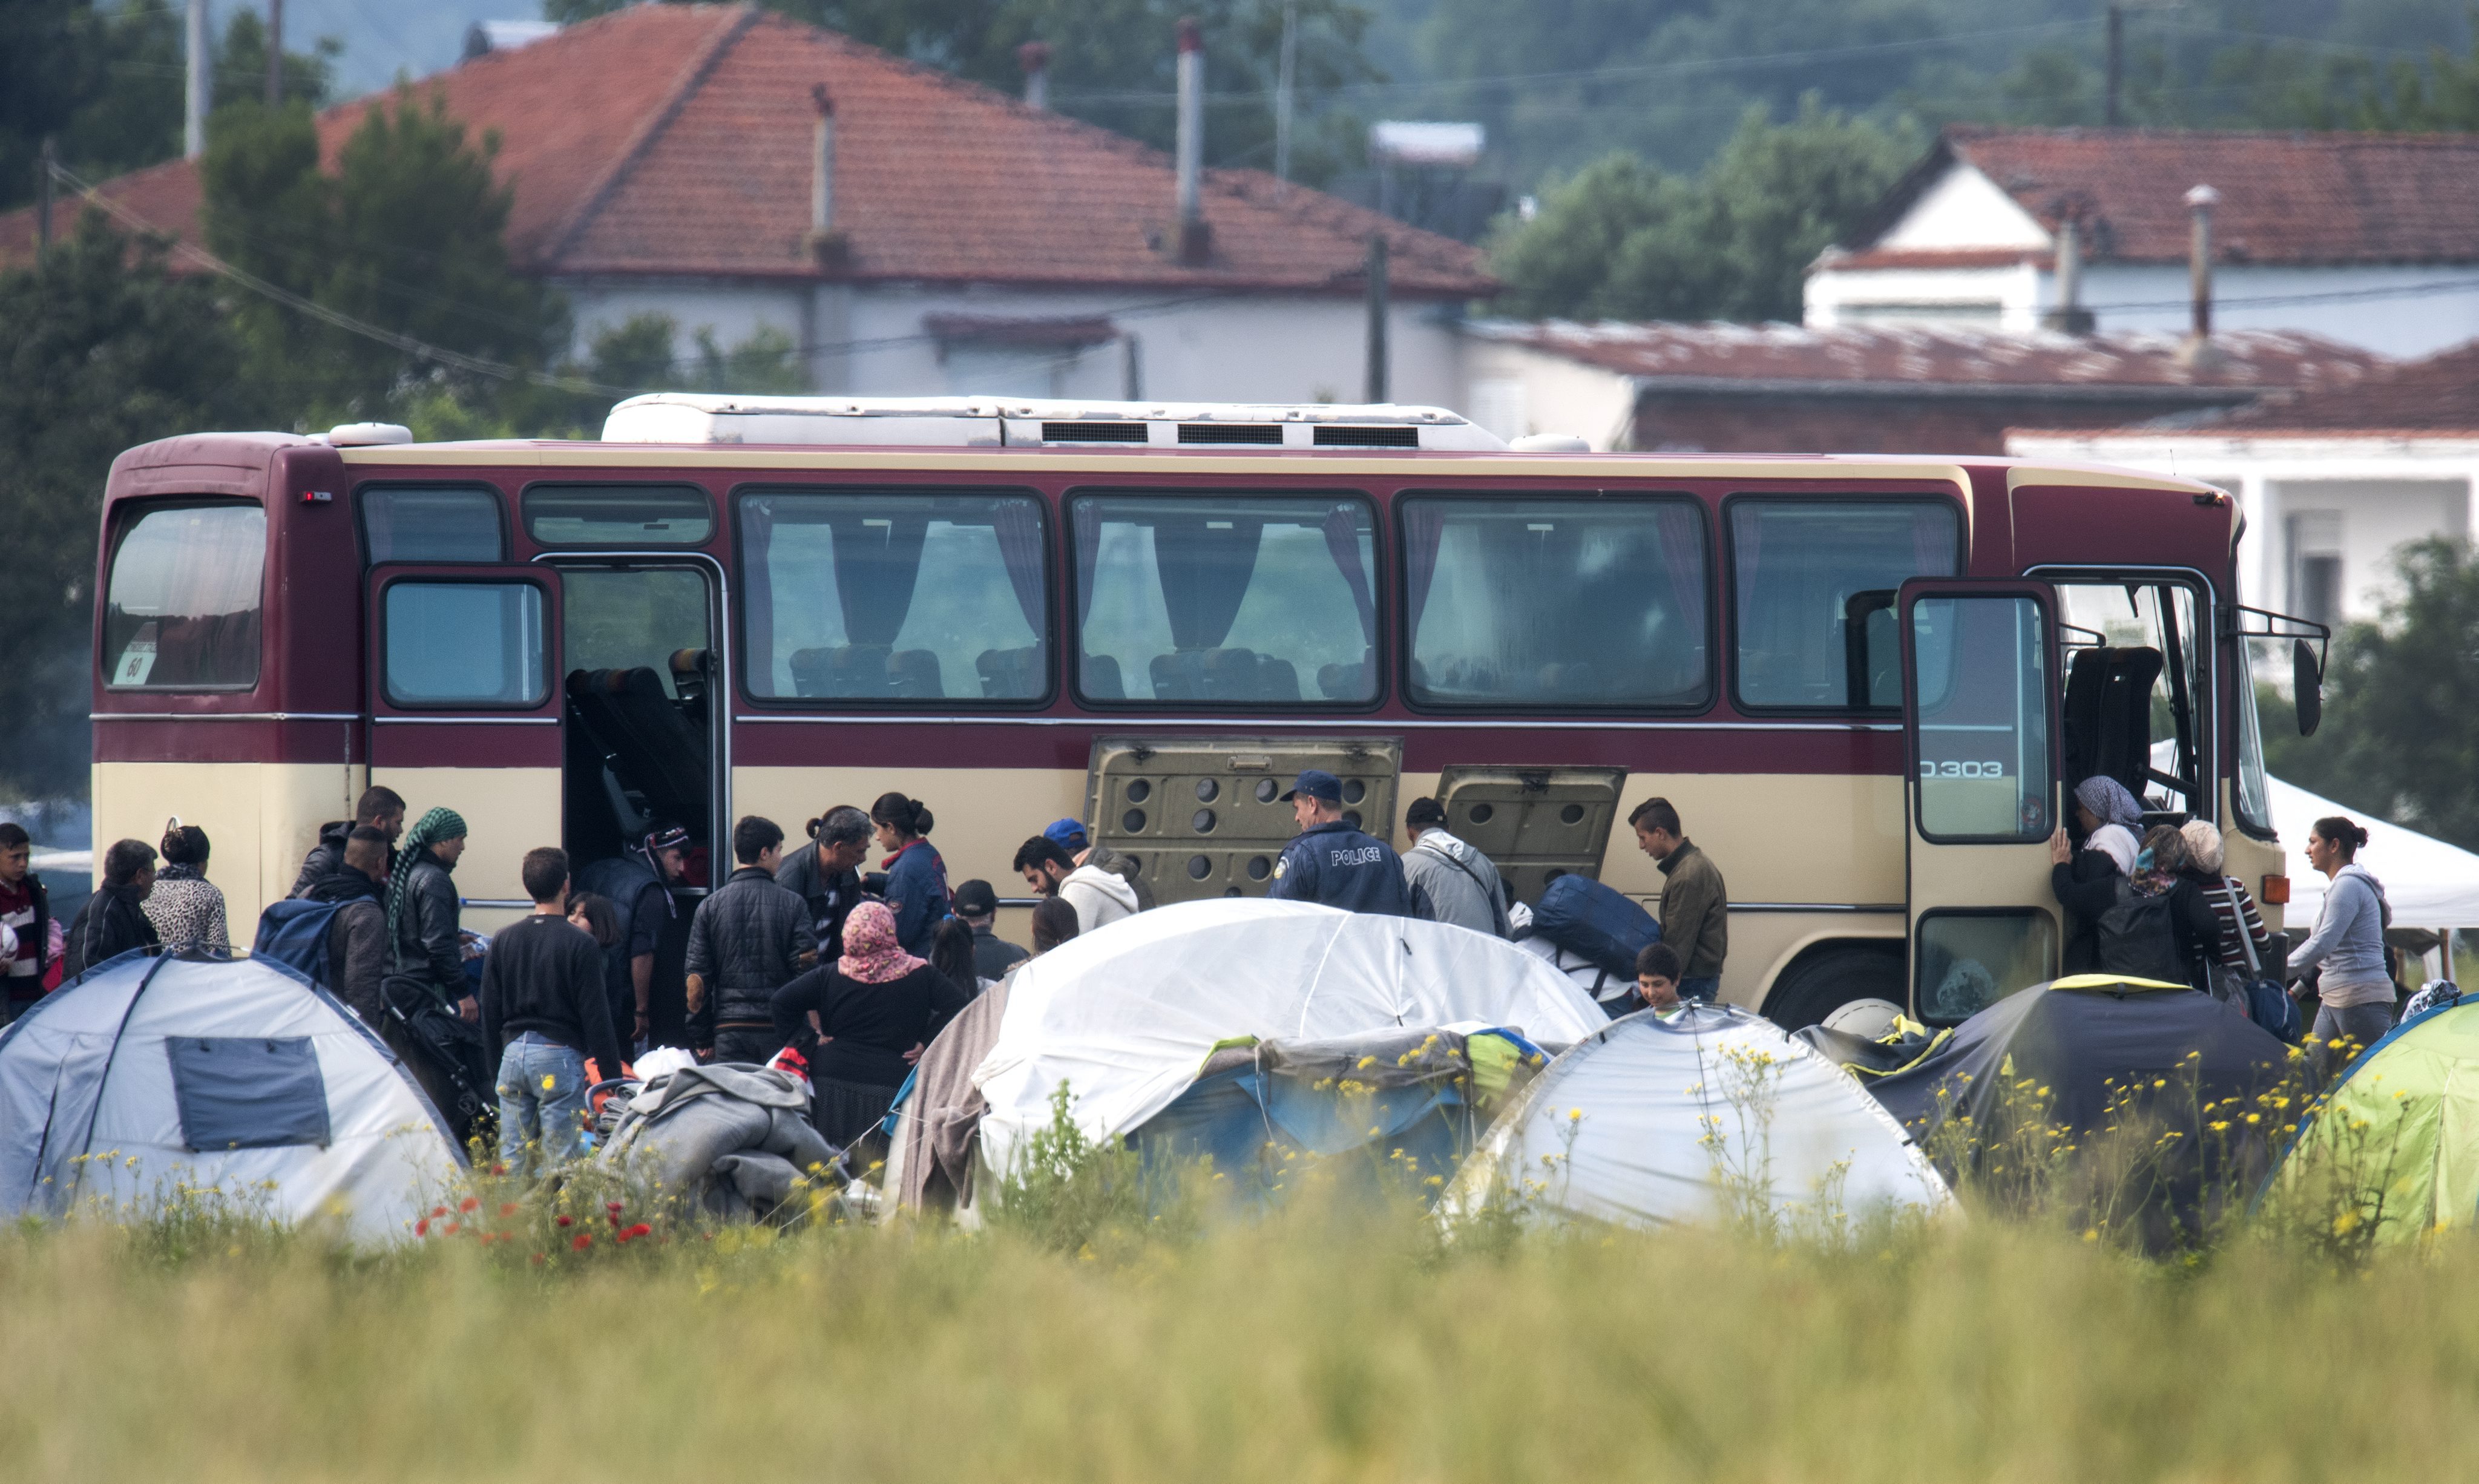 Grecia a inceput EVACUAREA refugiatilor din tabara de la Idomeni. Mesajul de pe autocarele ce au transportat 800 de migranti - Imaginea 15